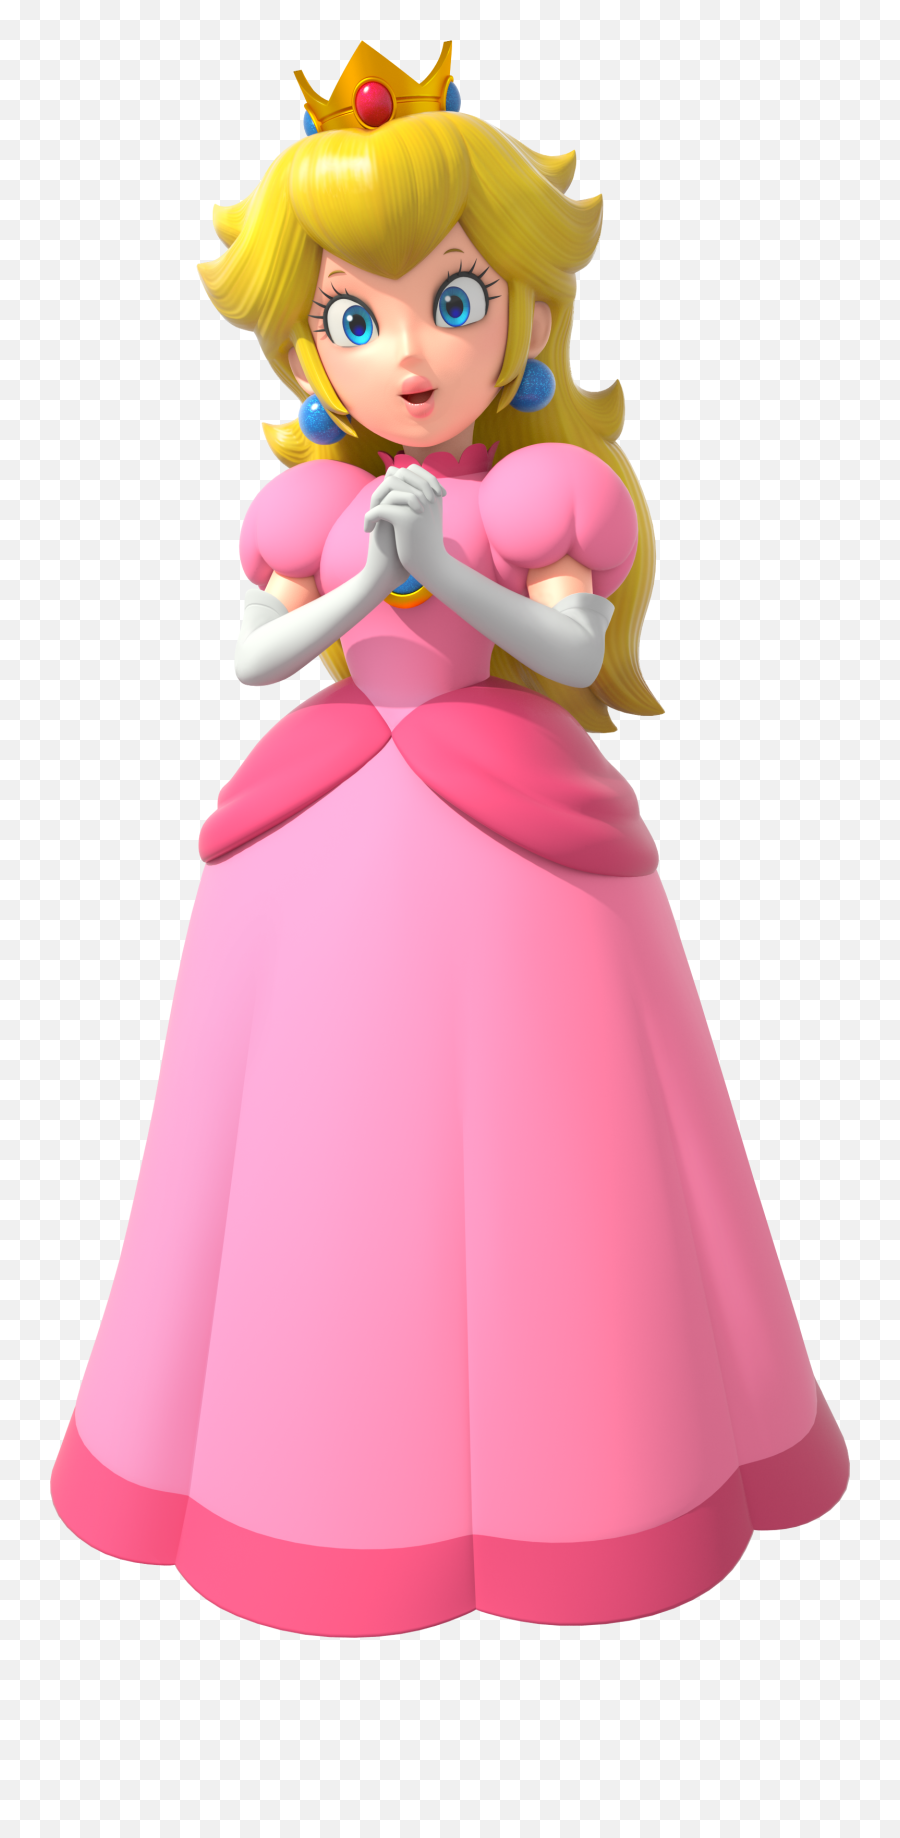 Princess Peach - Princess Peach Png,Princess Peach Transparent